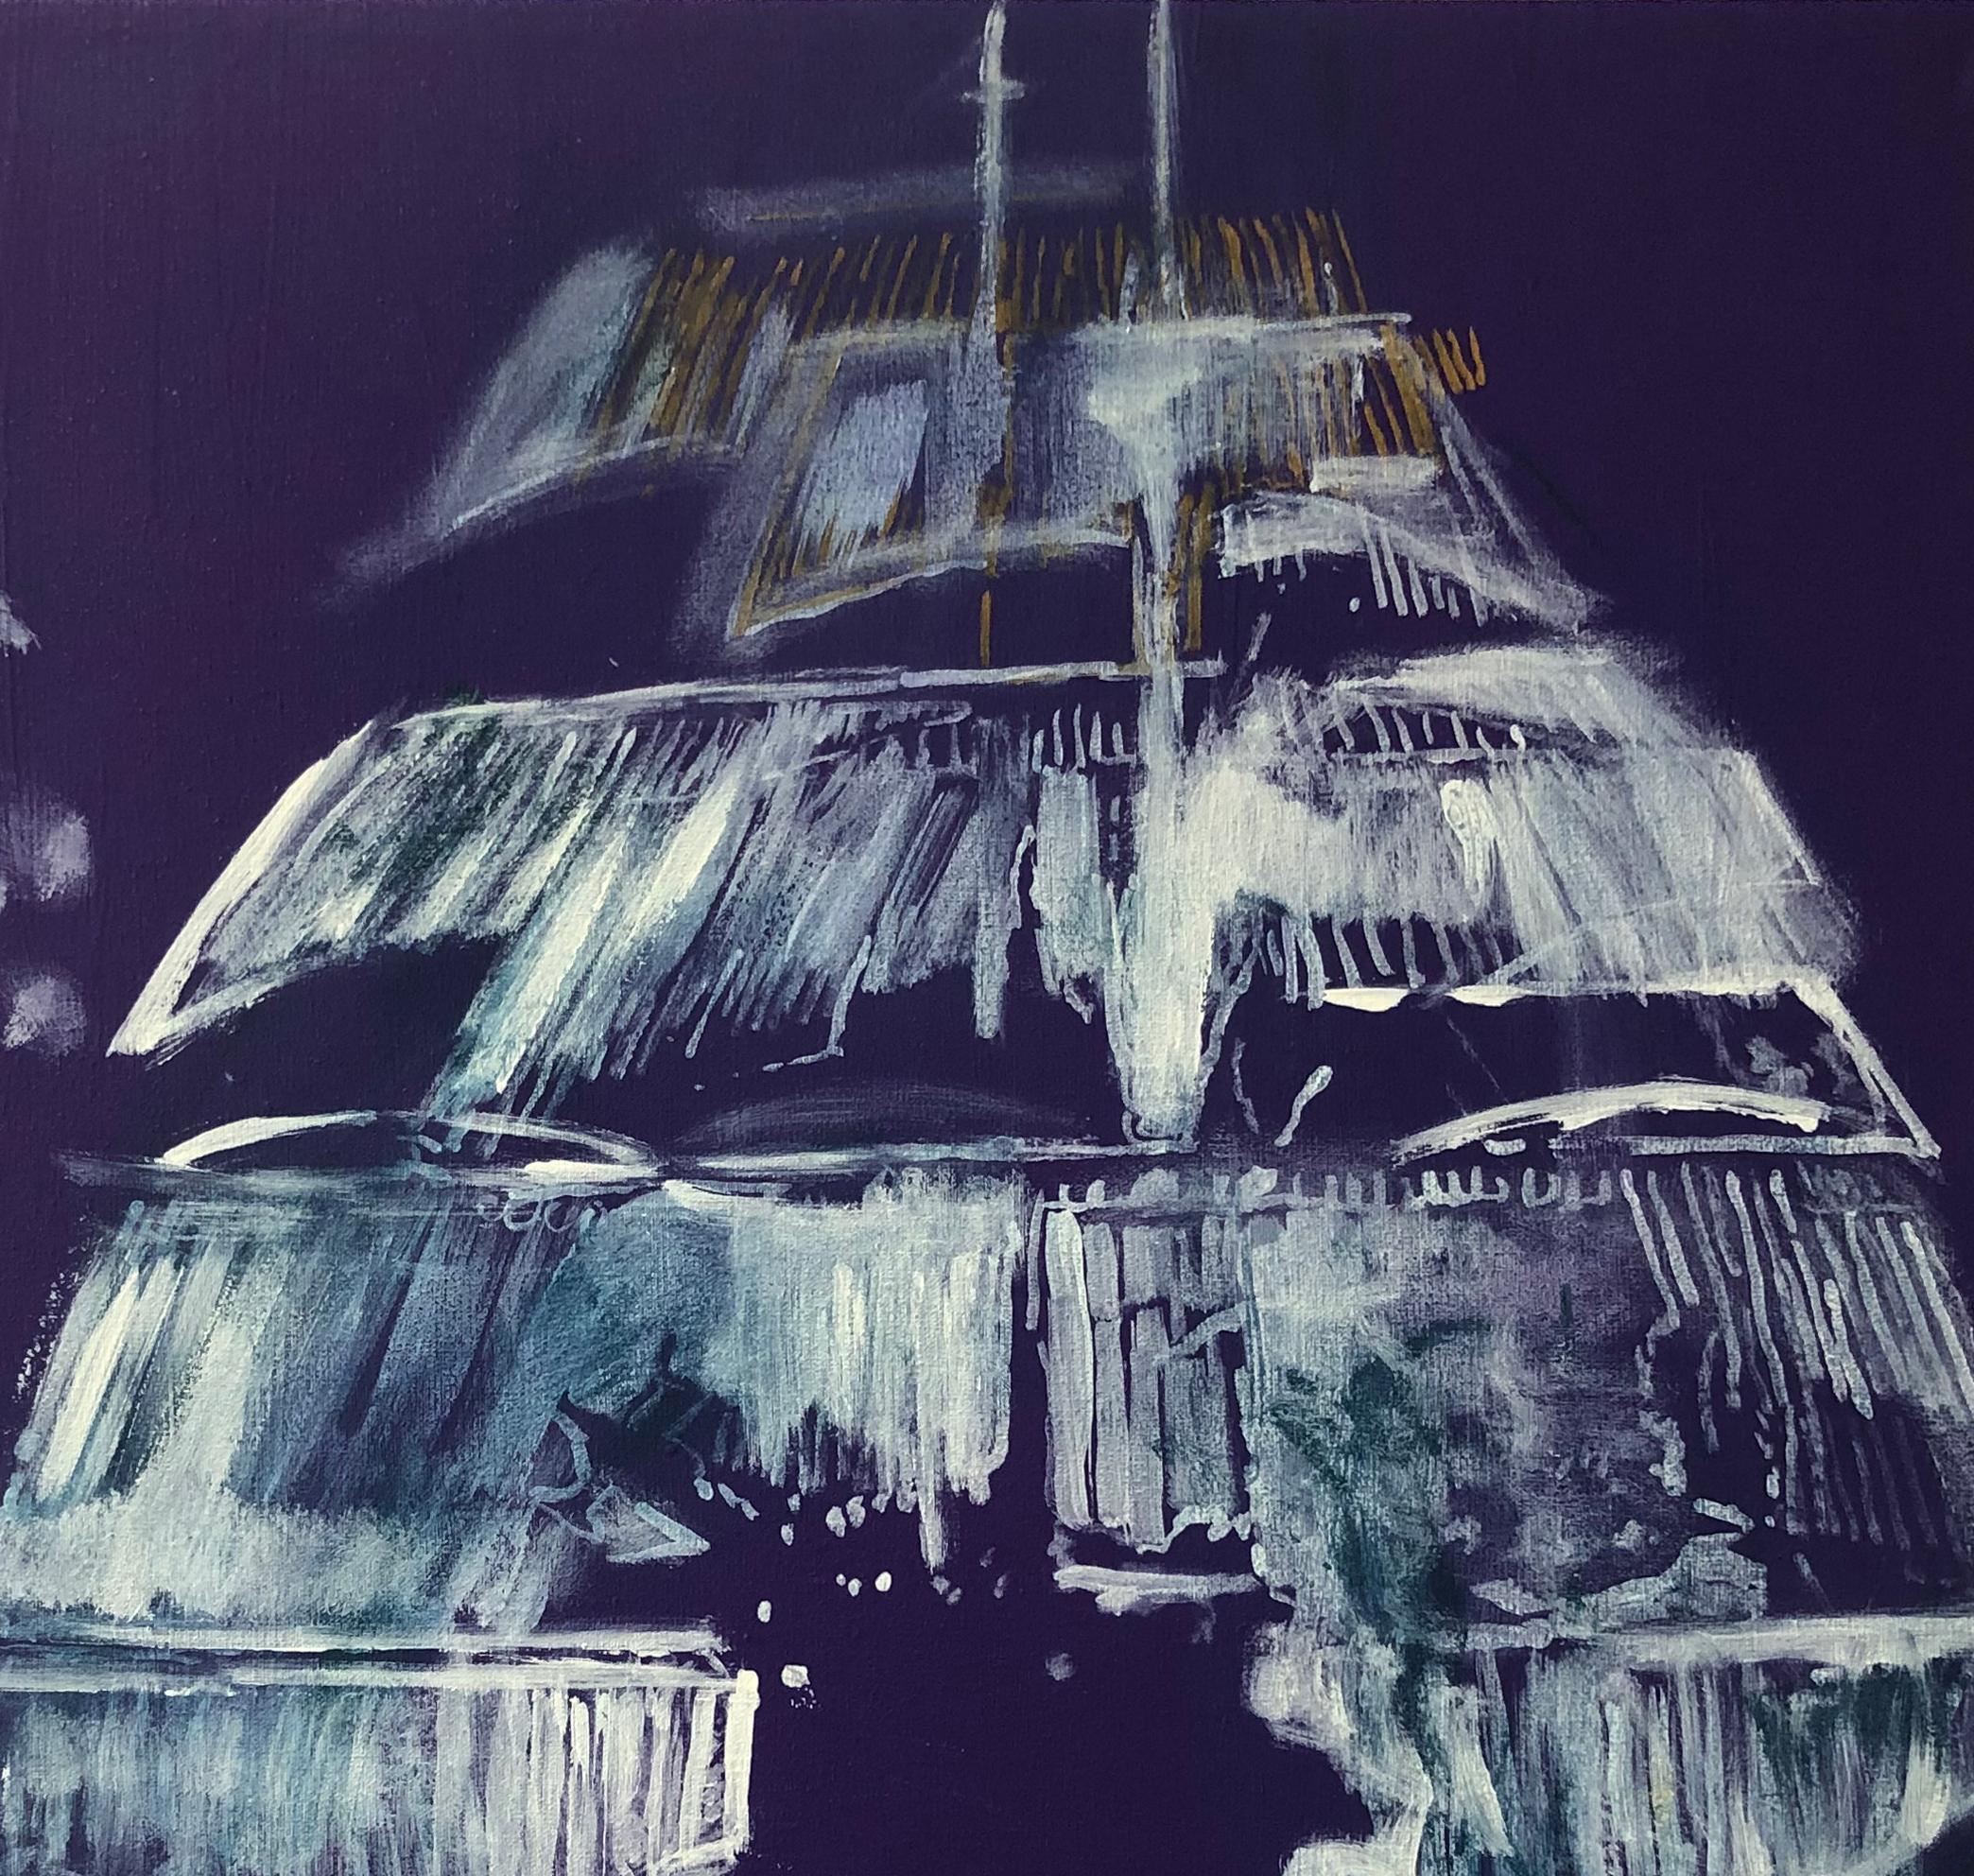 Diptychon Barcos Violeta II & III, von Sergio Bazan
Mischtechnik auf Leinwand
Bildgröße: 50 H x 100 B cm
Ungerahmt

Signiert vom Künstler

_______

Gemälde - Mischtechniken und Arbeiten auf Papier. 



Sergio Bazan wurde 1962 in Buenos Aires